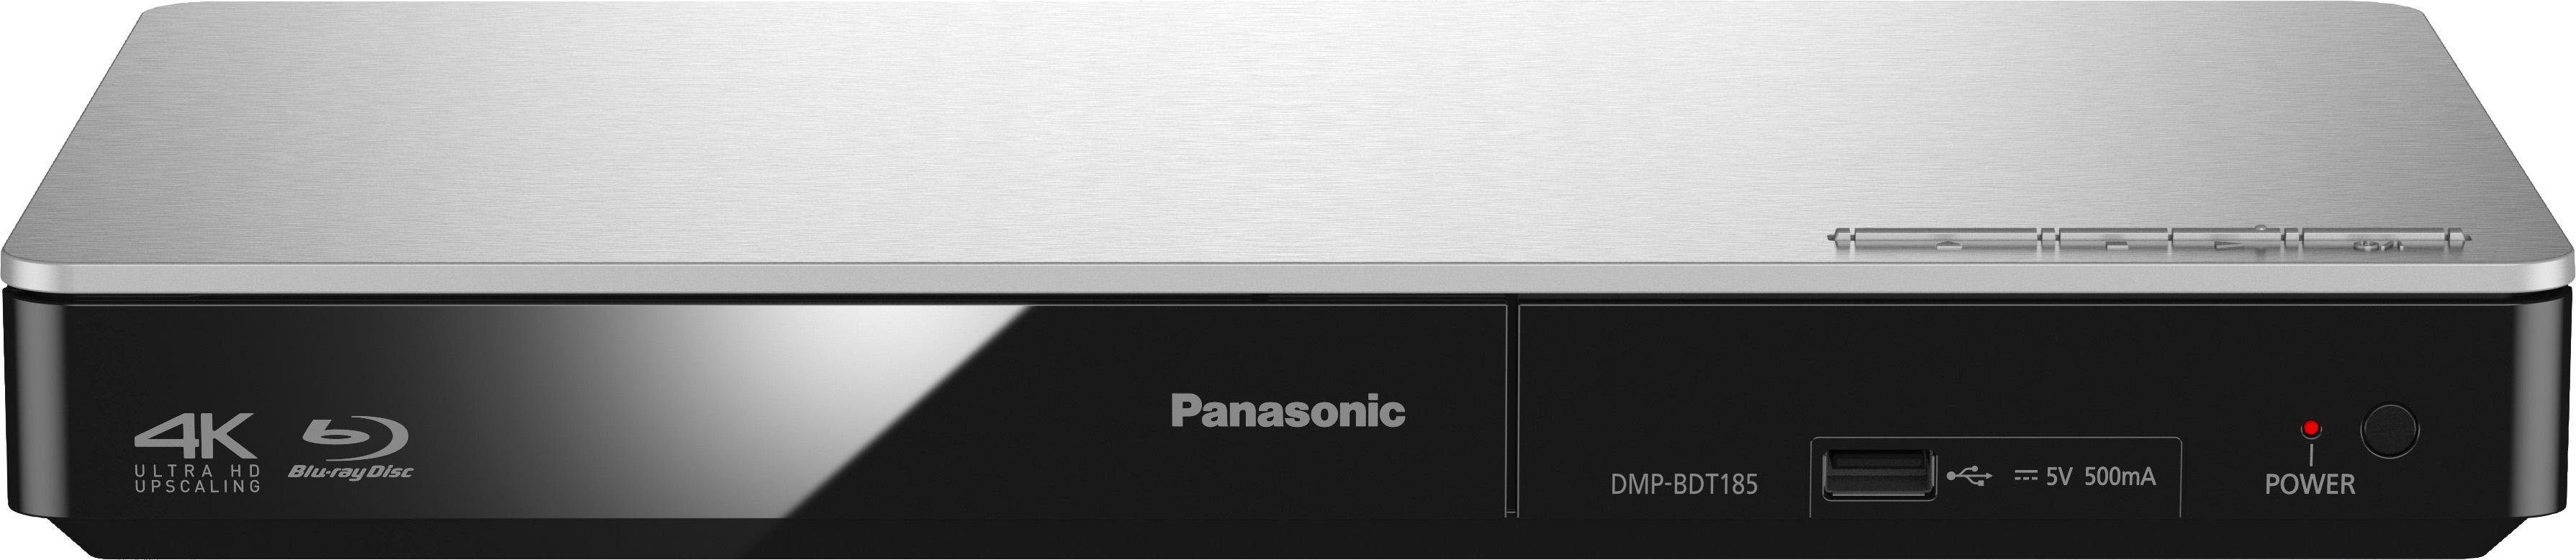 Panasonic DMP-BDT184 (Ethernet), Blu-ray-Player / DMP-BDT185 Schnellstart-Modus) Upscaling, (LAN 4K silberfarben